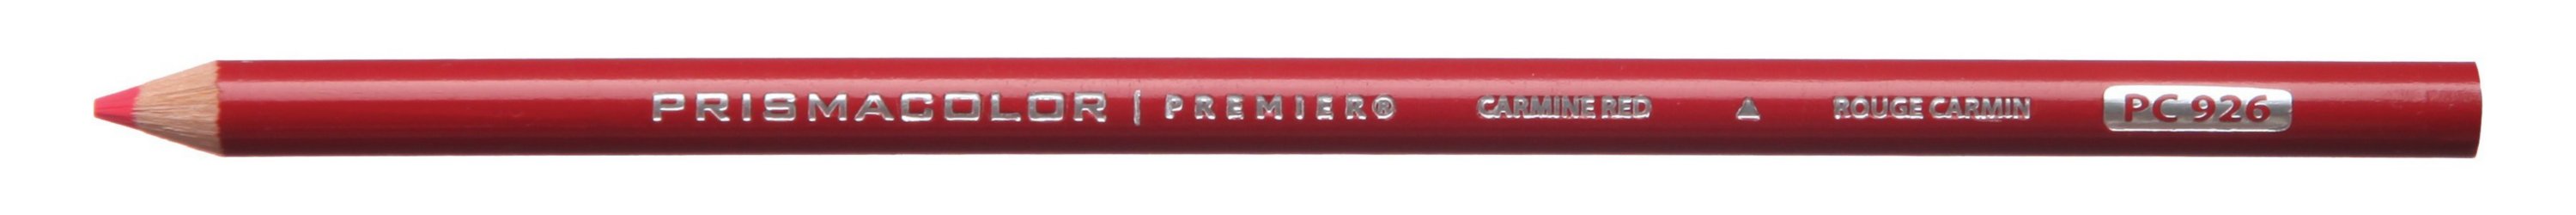 https://s7d9.scene7.com/is/image/NewellRubbermaid/prismacolor-premier-carmine-red-colored-pencil?fmt=jpeg